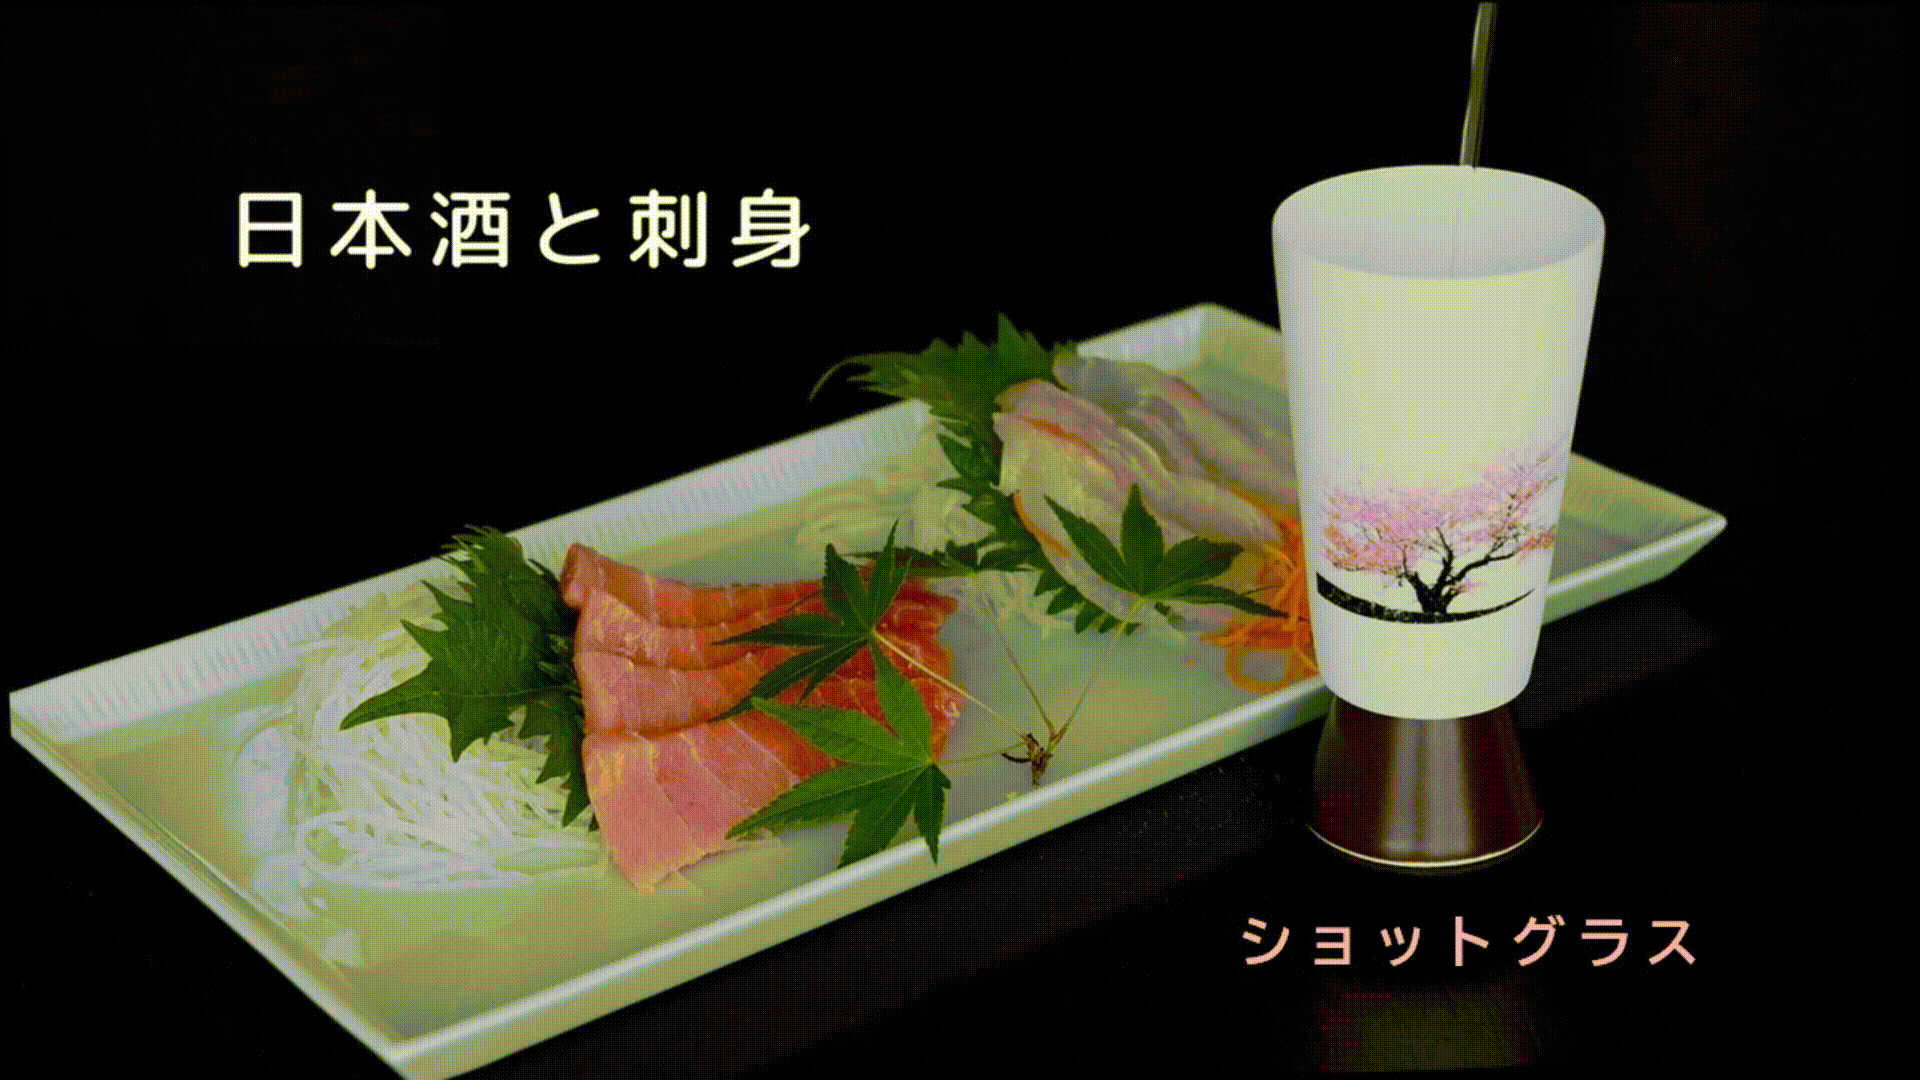 【有田焼】冷水を注ぐとダブル満開桜、超薄型磁器パールシェルグラスのショットグラス